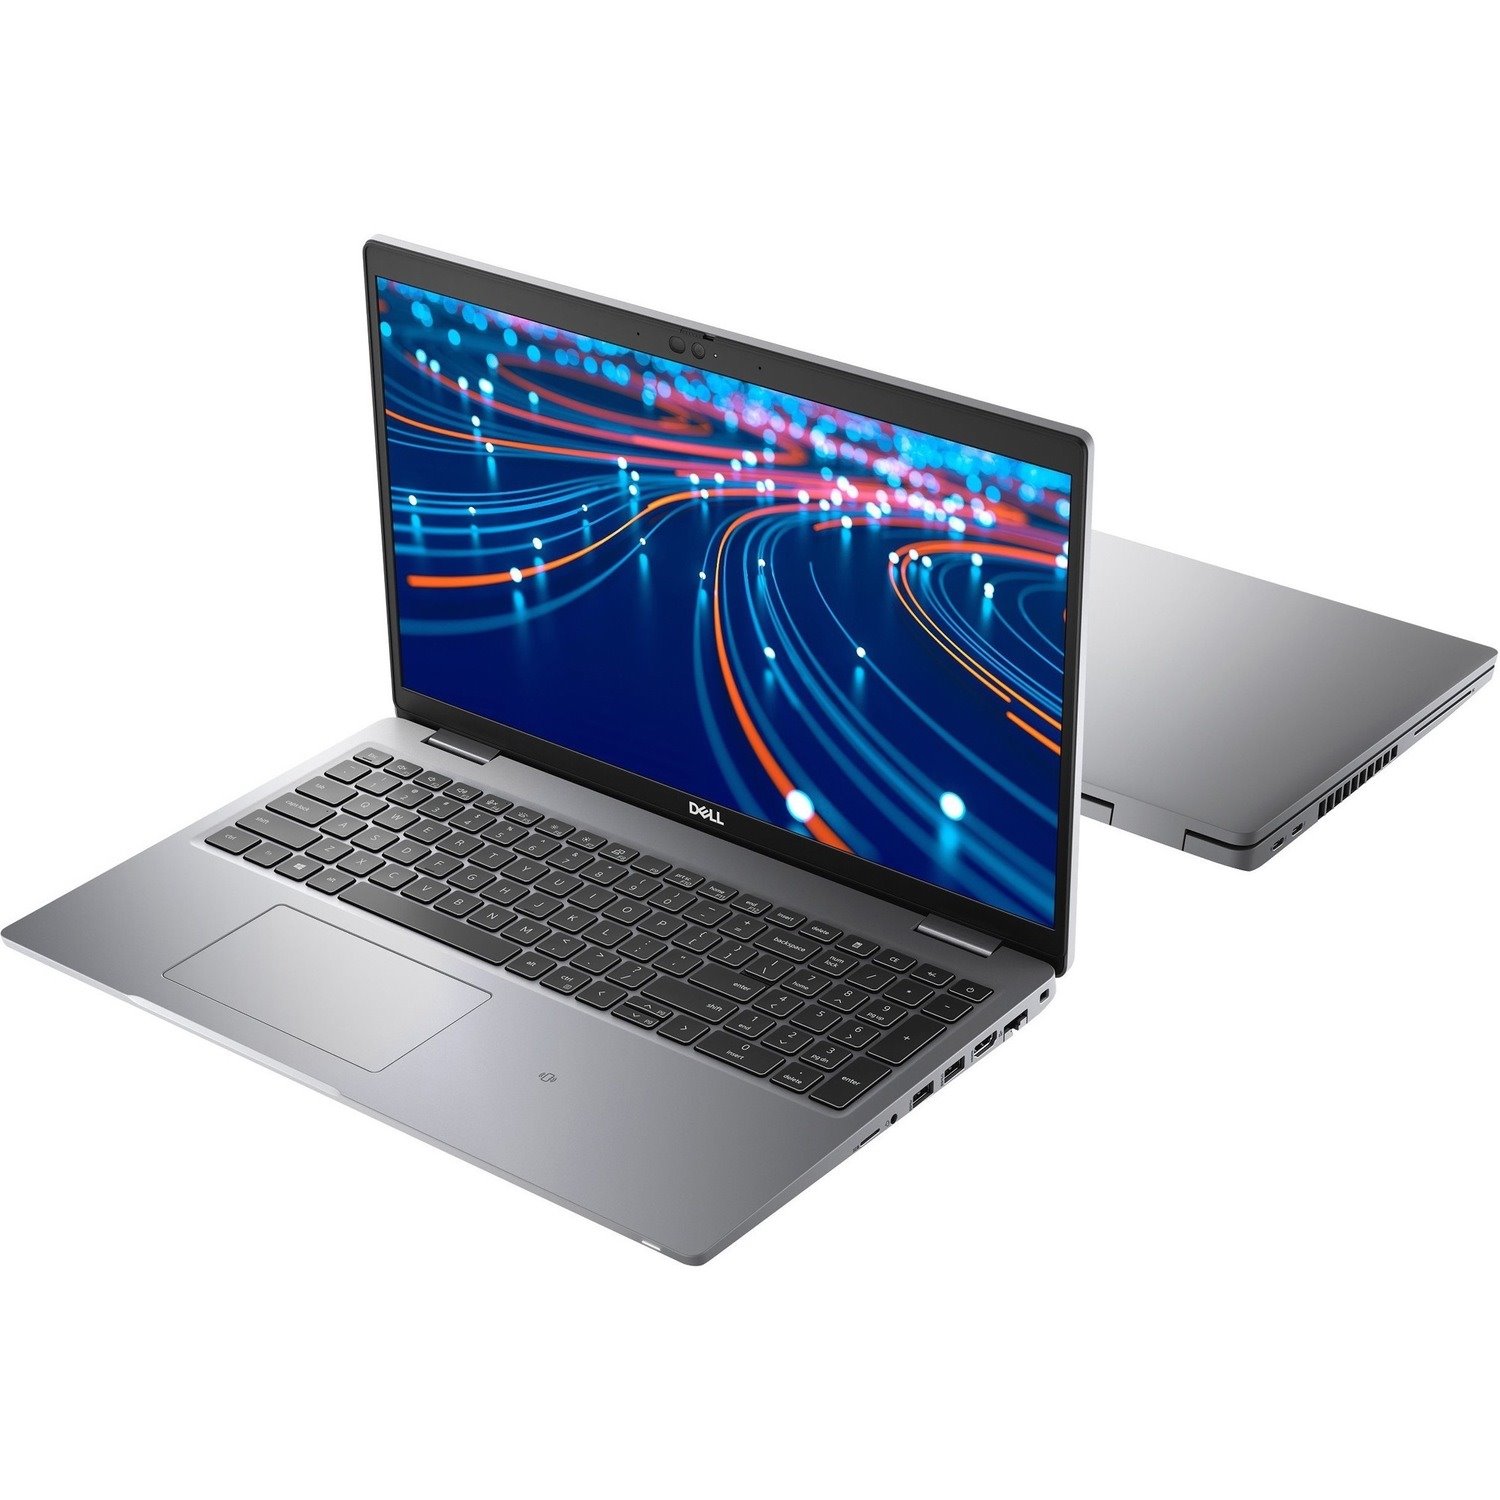 Dell Latitude 5000 5520 39.6 cm (15.6") Notebook - Full HD - 1920 x 1080 - Intel Core i5 11th Gen i5-1135G7 Quad-core (4 Core) 2.40 GHz - 8 GB Total RAM - 256 GB SSD - Titan Gray